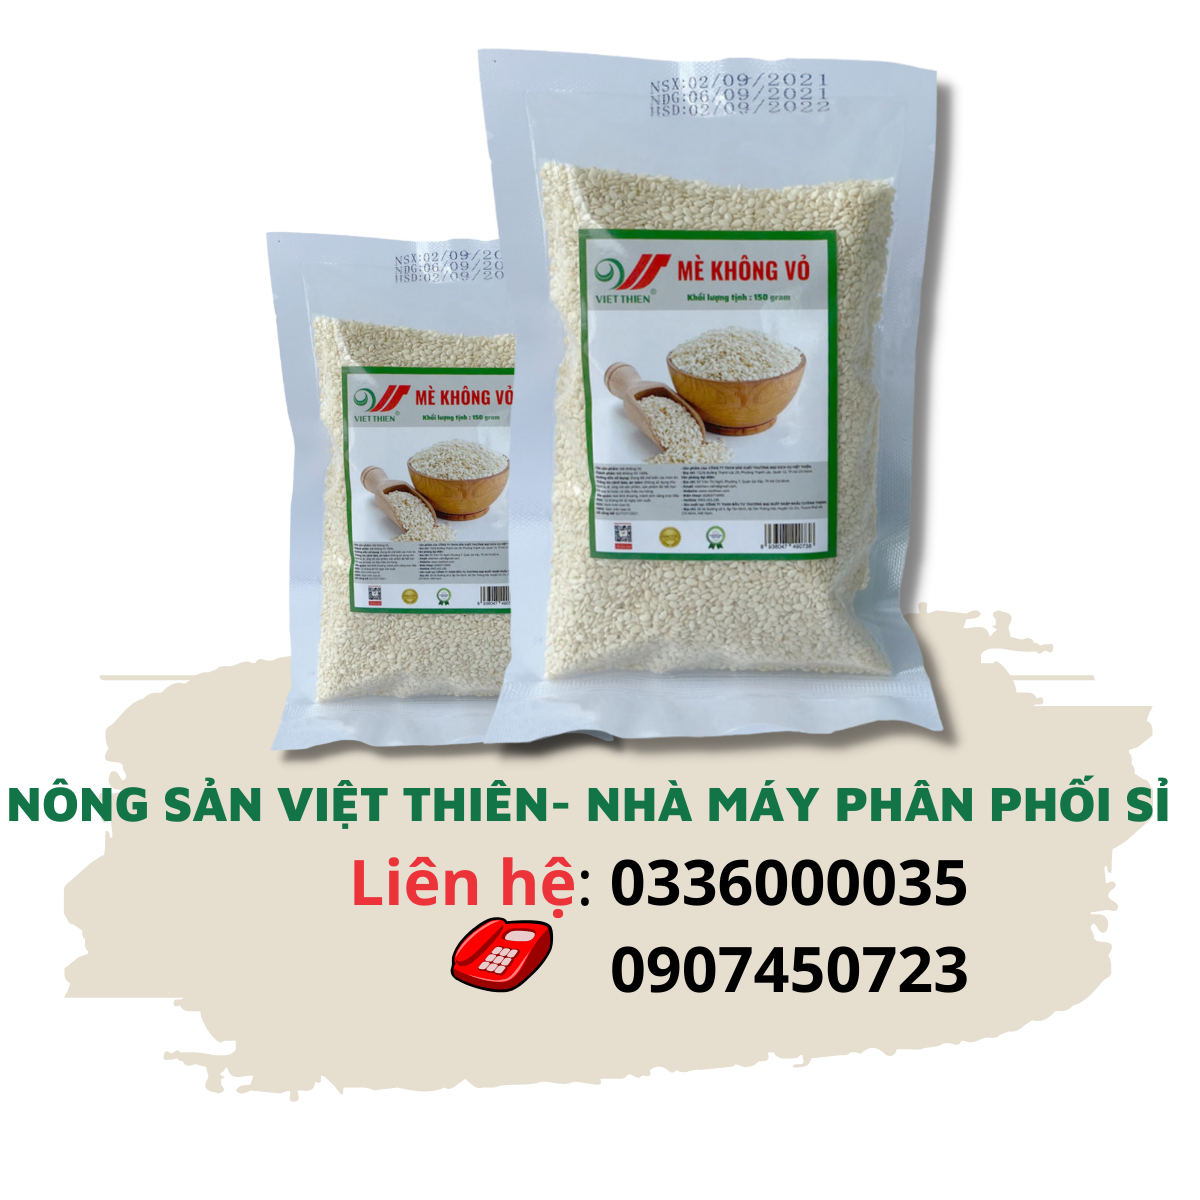 Mè không vỏ Việt Thiên 150g, nhà máy sản xuất và phân phối nông sản Việt Thiên, giá rẻ